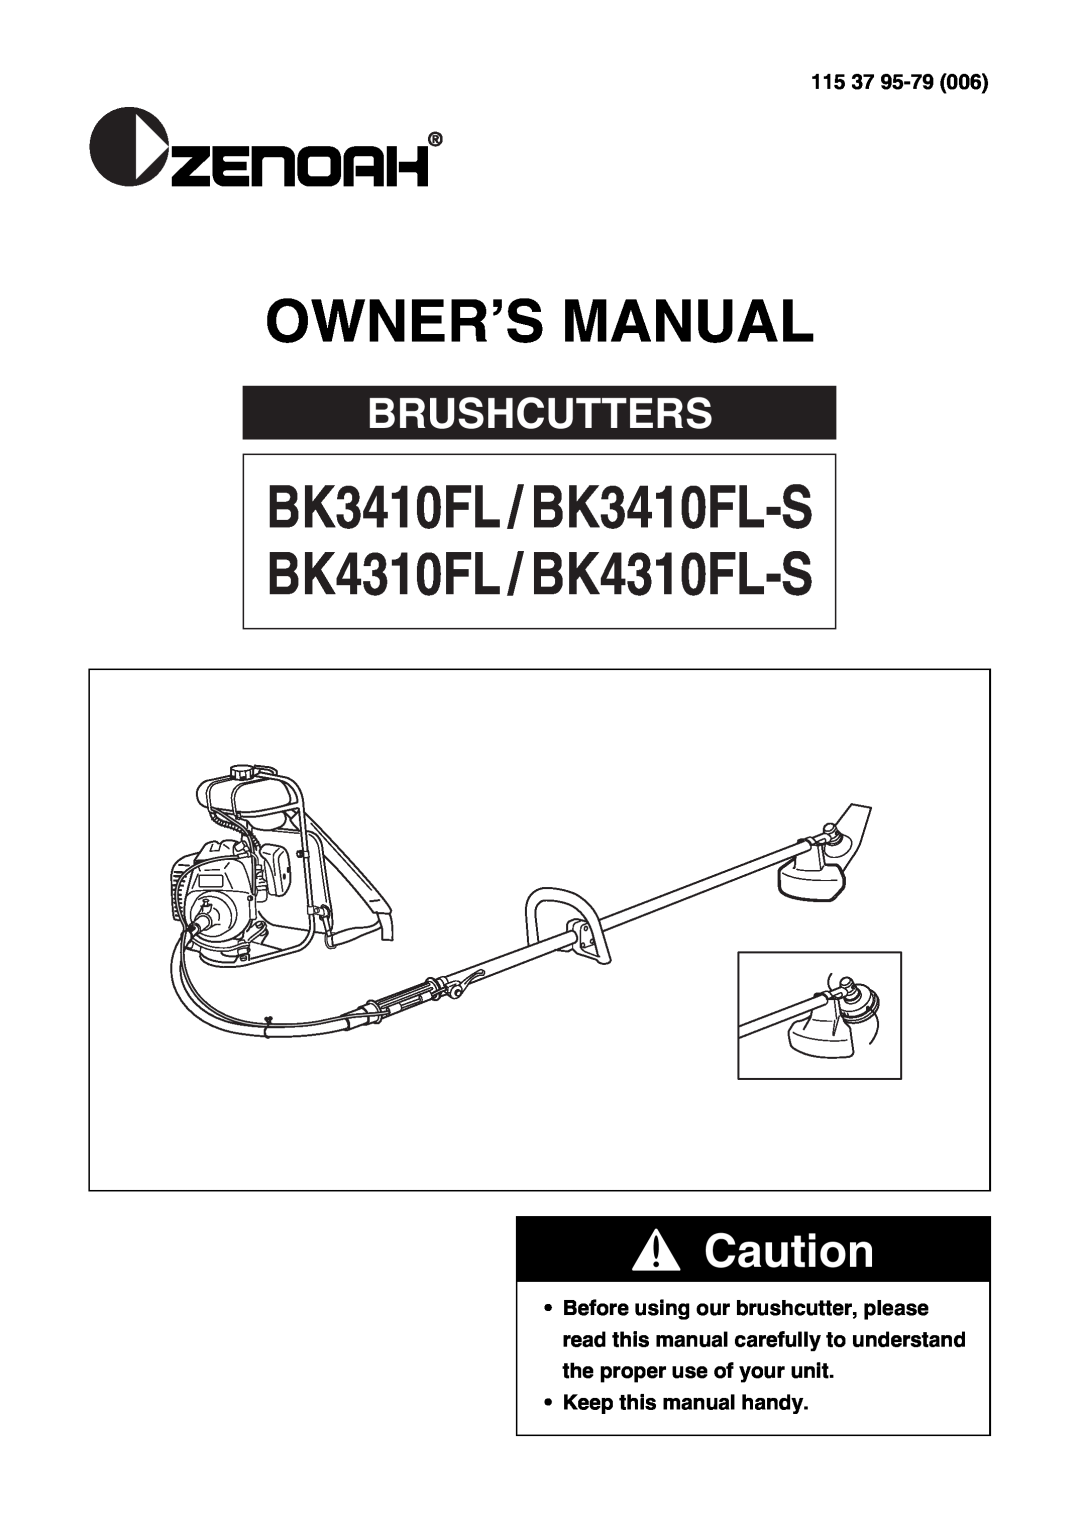 Zenoah owner manual BK3410FL / BK3410FL-S, BK4310FL / BK4310FL-S, Brushcutters, 115, Keep this manual handy 